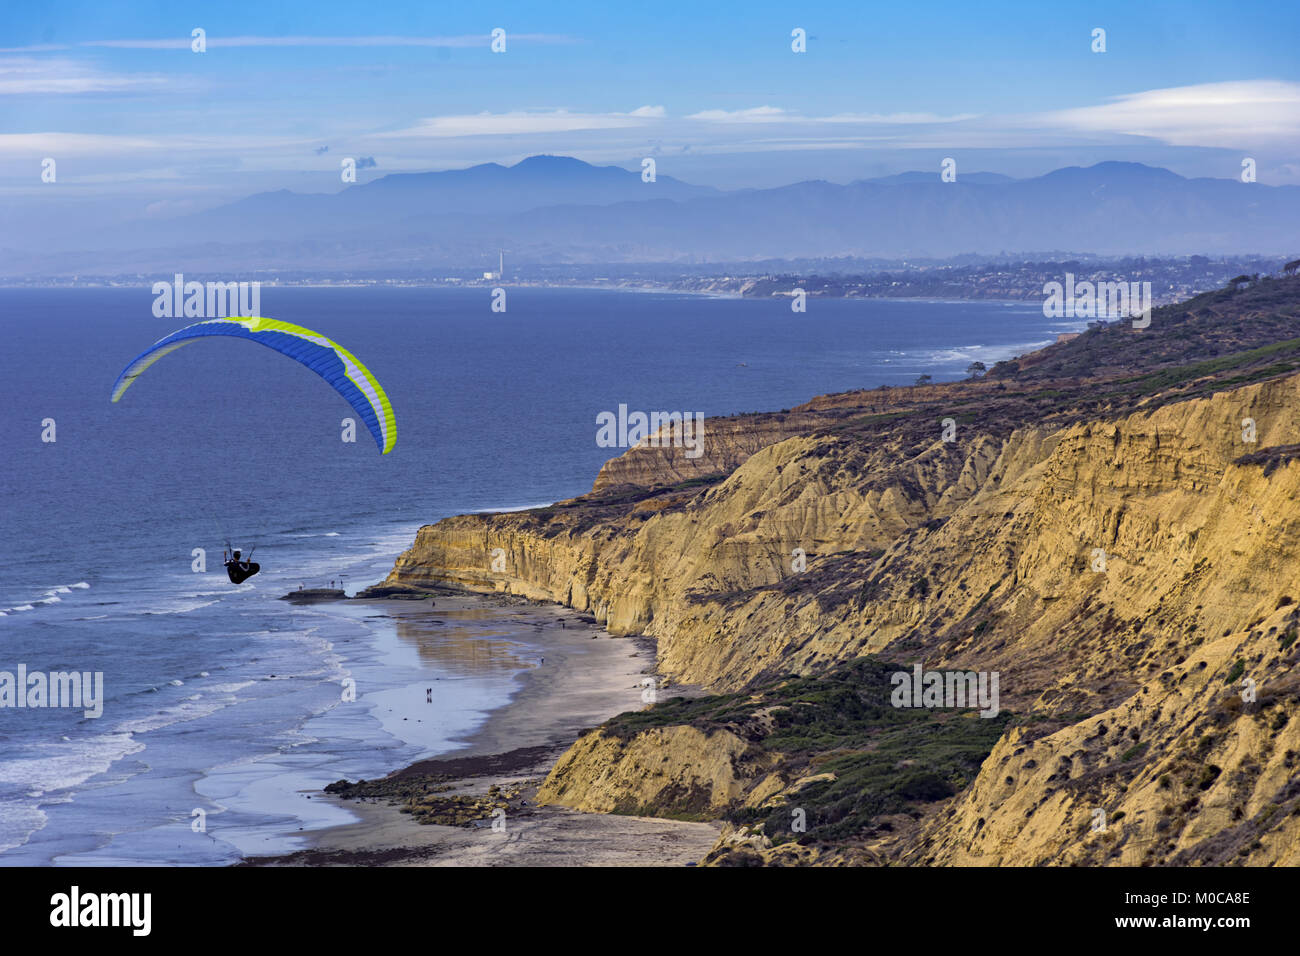 Hang glider soaring at Torrey Pines hang glider port along the coast at La Jolla California USA Stock Photo